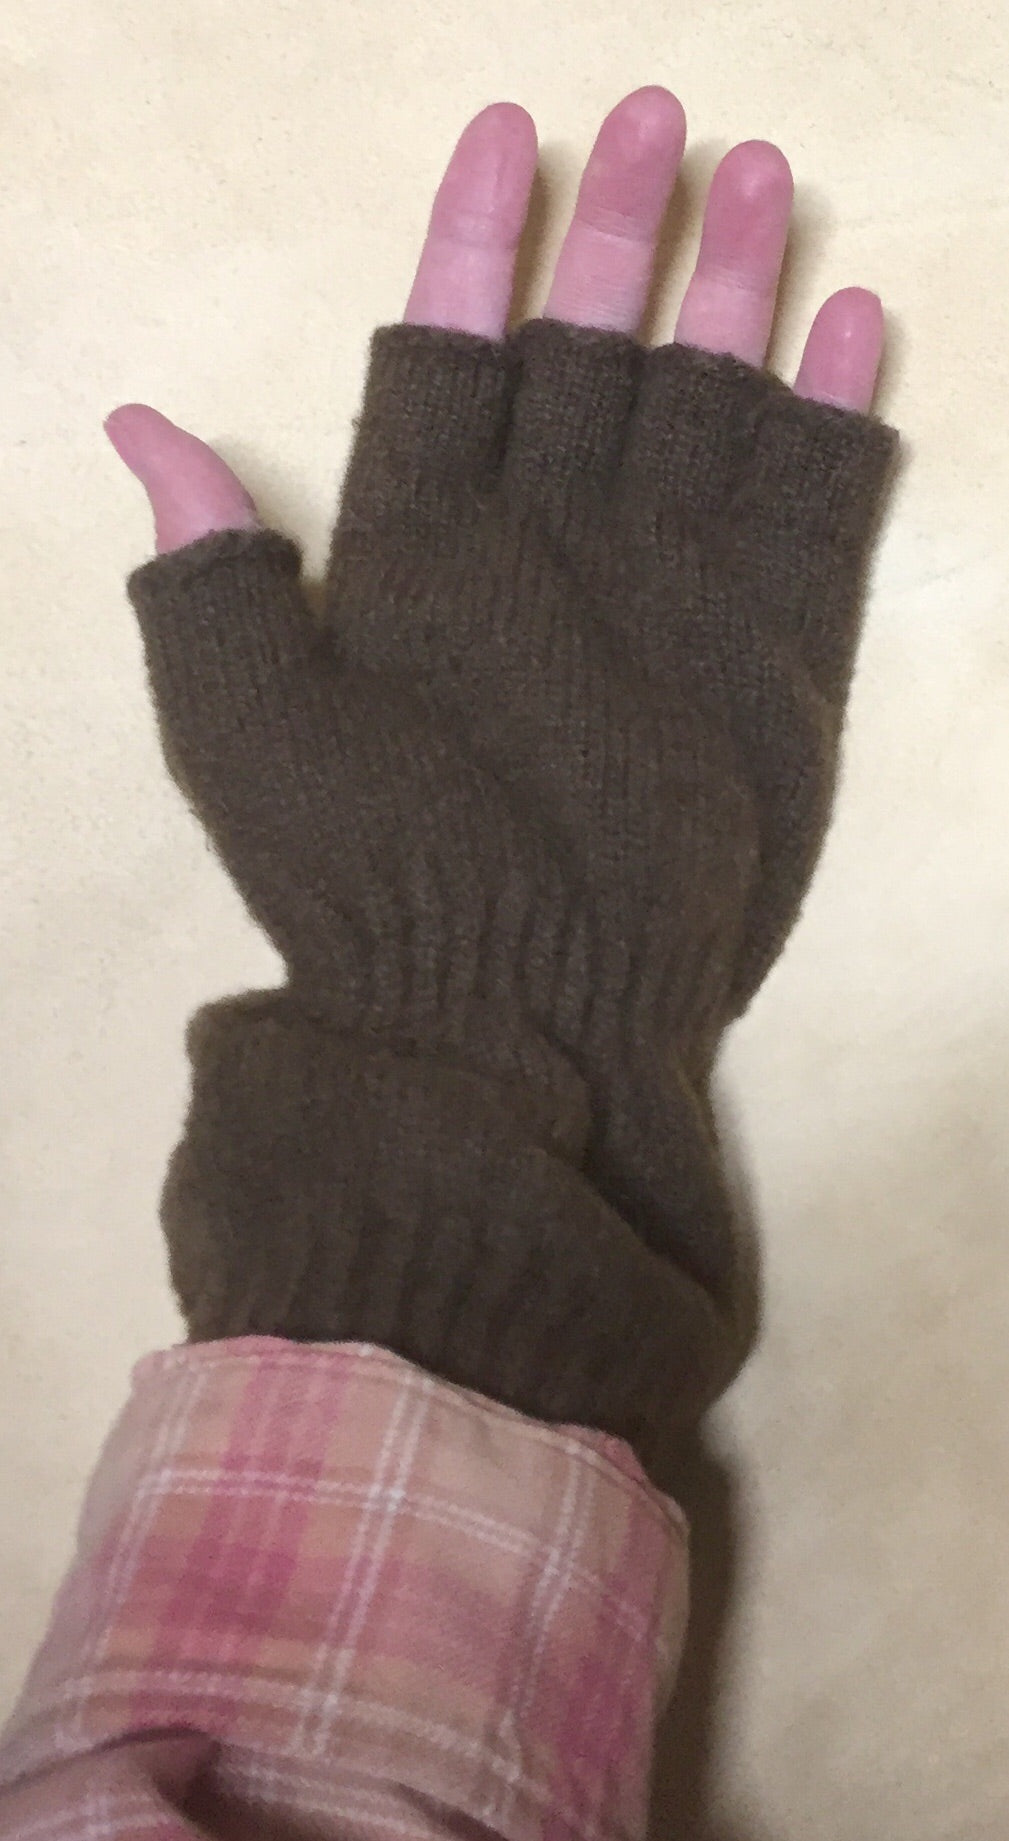 SALE SALE - Fingerless Wrist Warmer Gloves